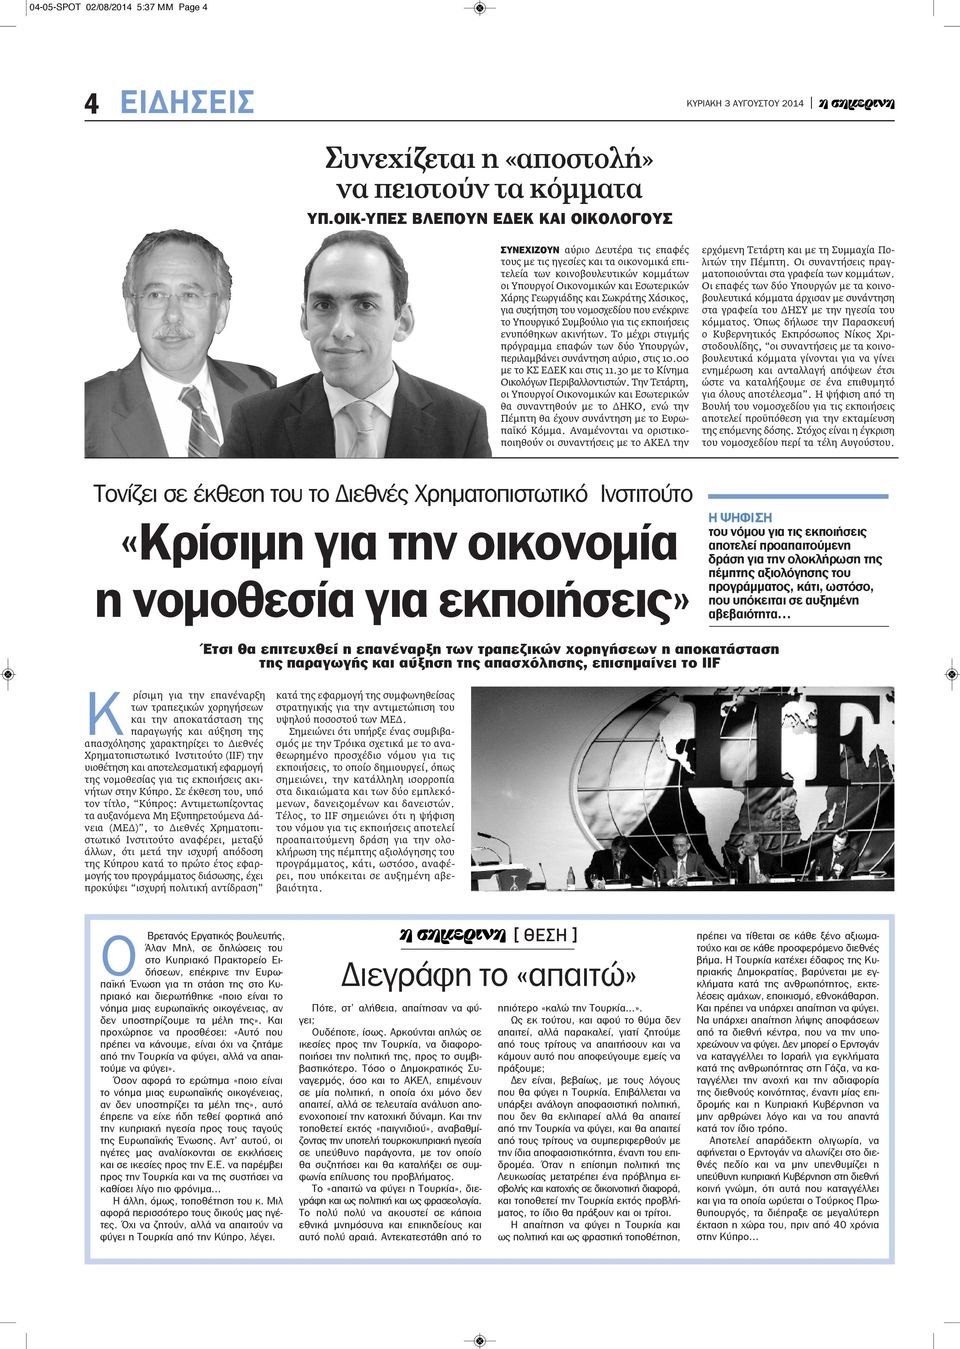 Γεωργιάδης και Σωκράτης Χάσικος, για συζήτηση του νομοσχεδίου που ενέκρινε το Υπουργικό Συμβούλιο για τις εκποιήσεις ενυπόθηκων ακινήτων.